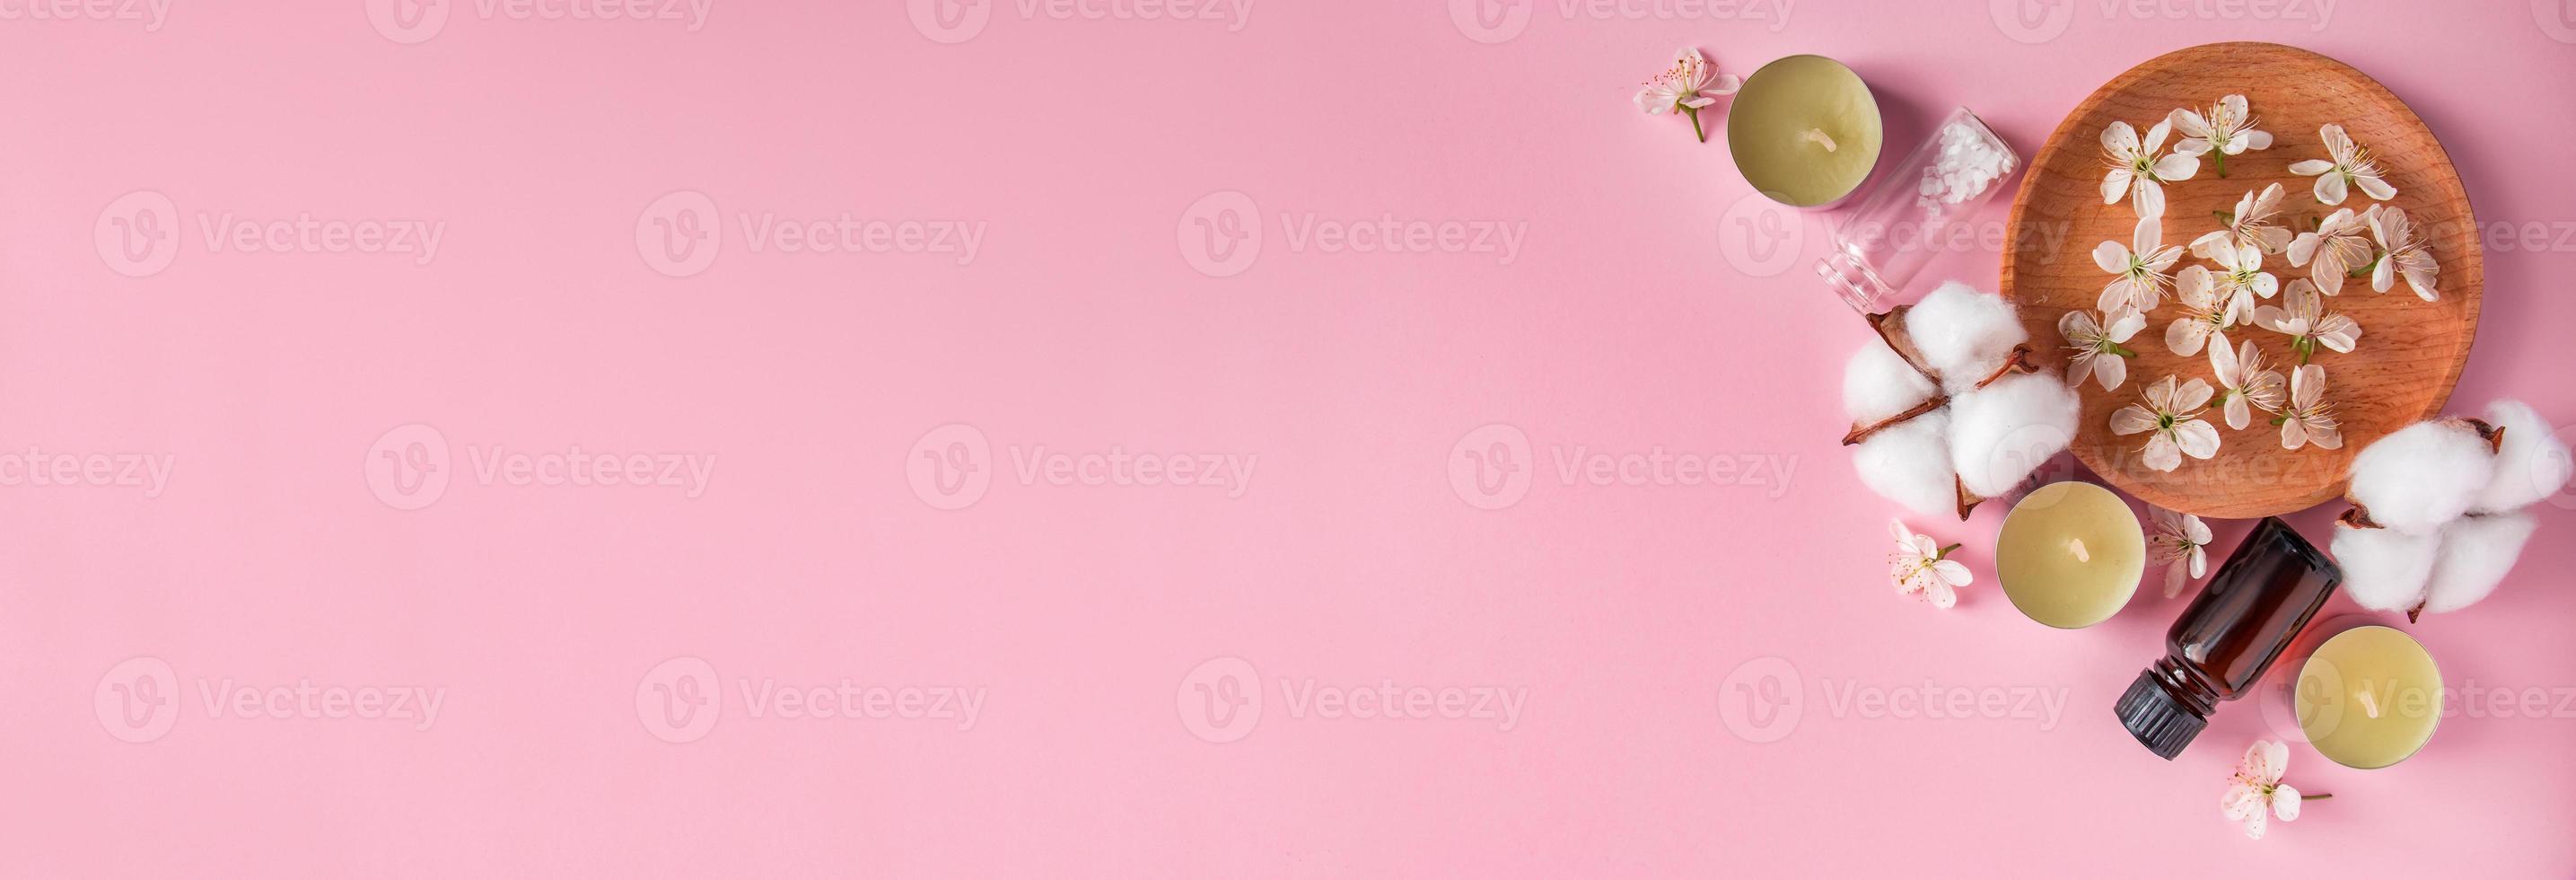 biologische cosmetica op een roze achtergrond. foto